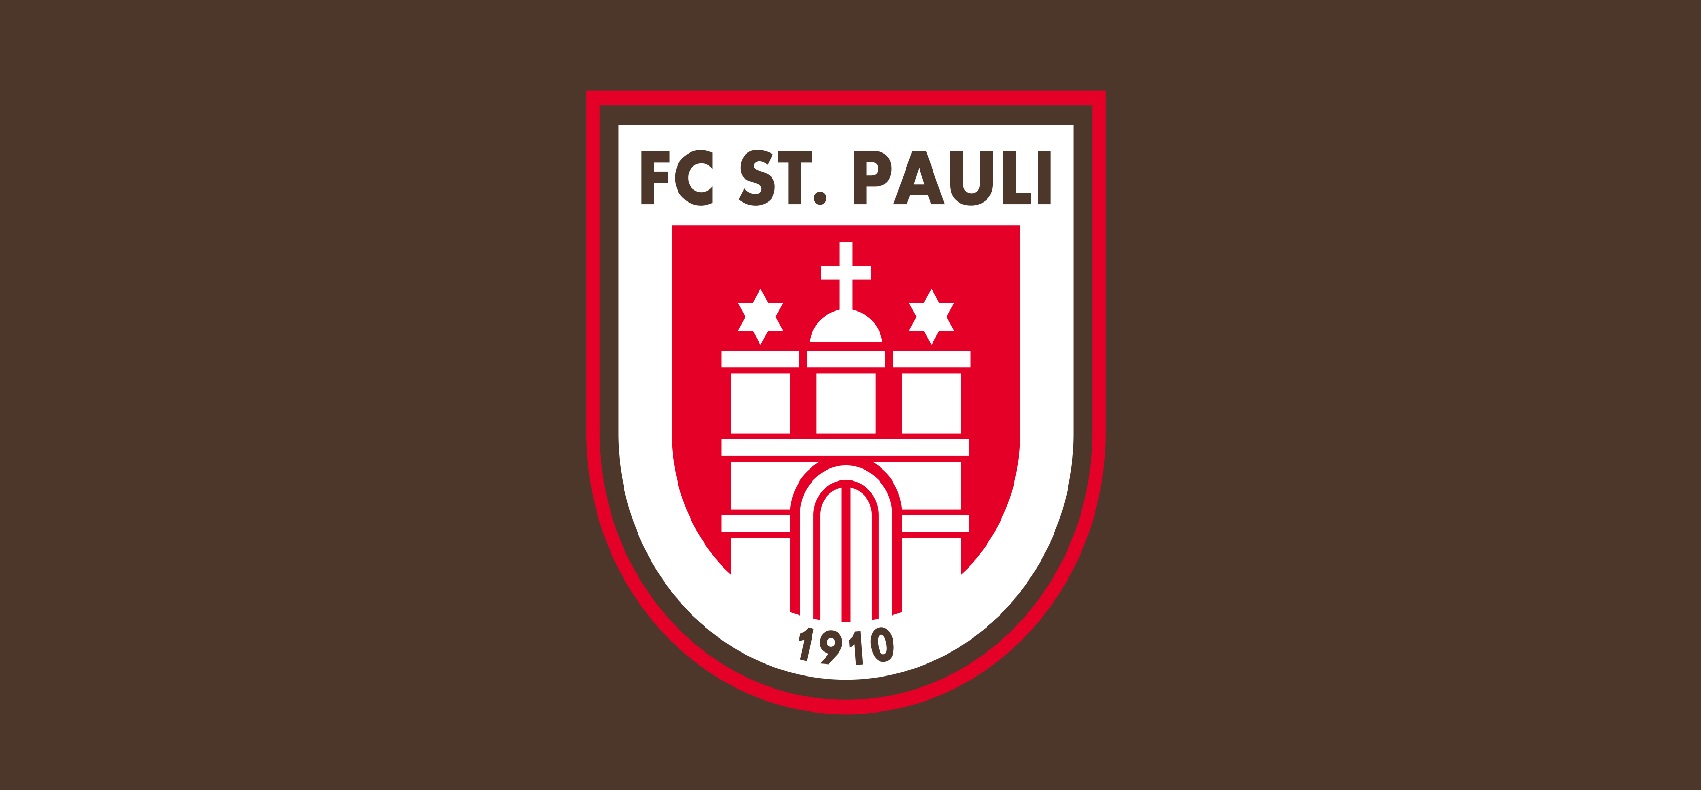 fc-st-pauli-u19-11-football-club-facts